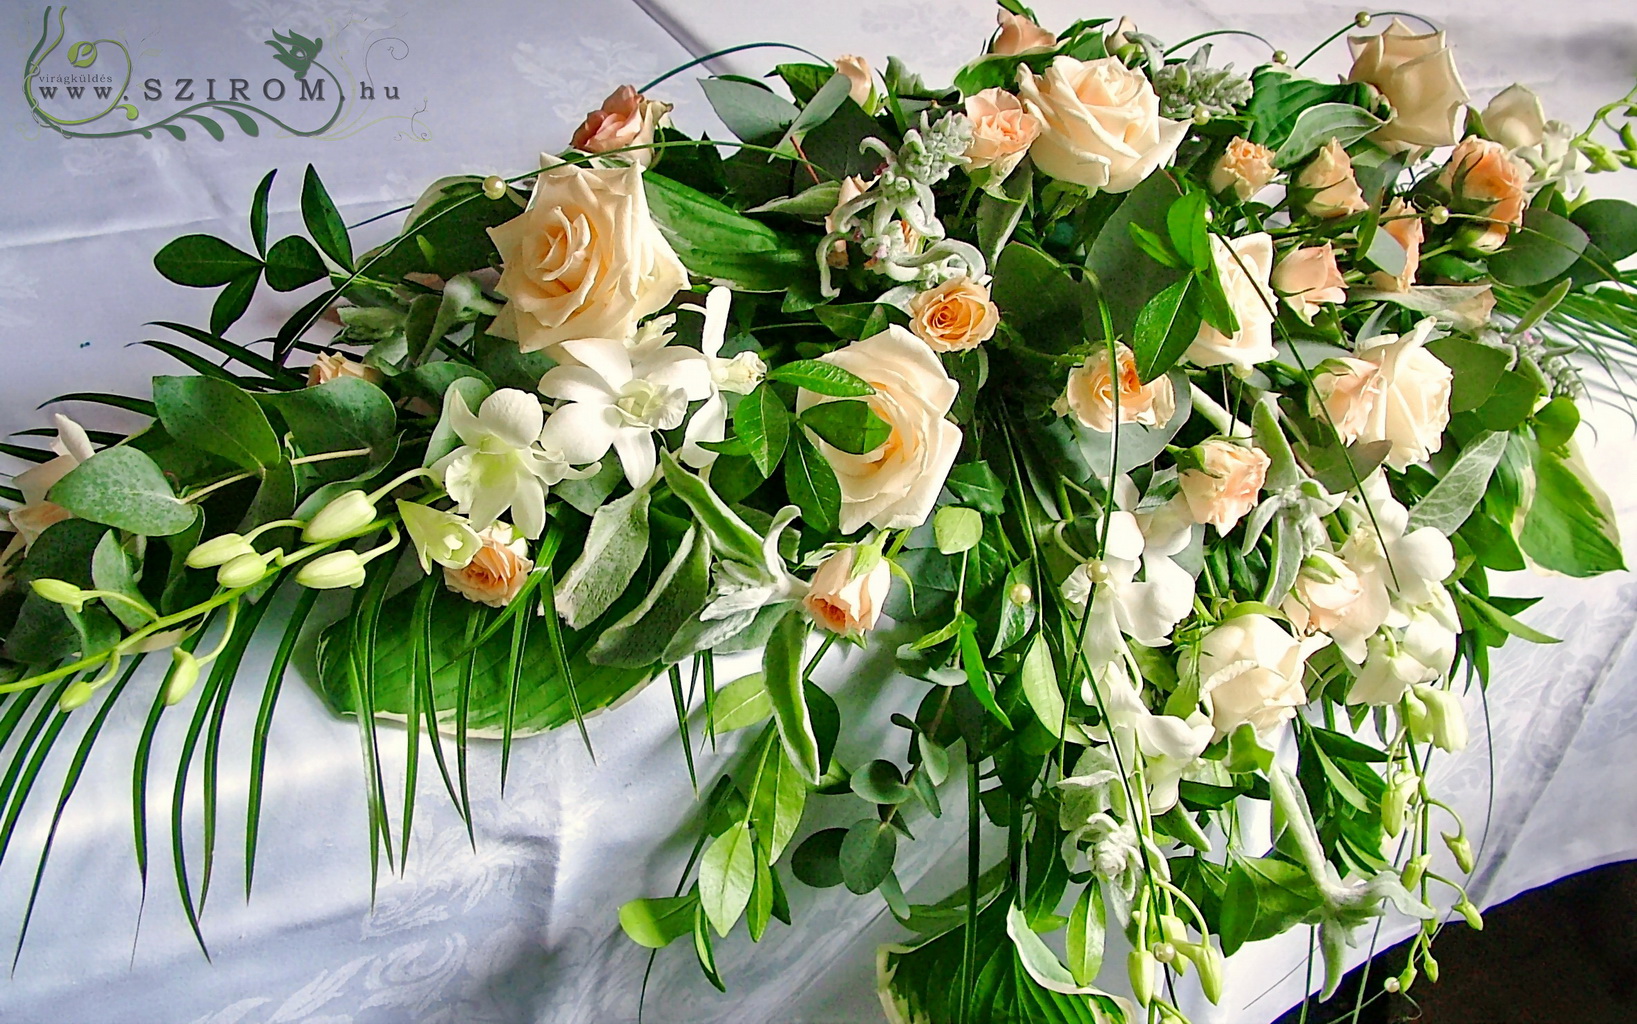 Virágküldés Budapest - Főasztaldísz Gundel  (bokros rózsa, rózsa, dendrobium, barack, fehér ), Gudel, esküvő